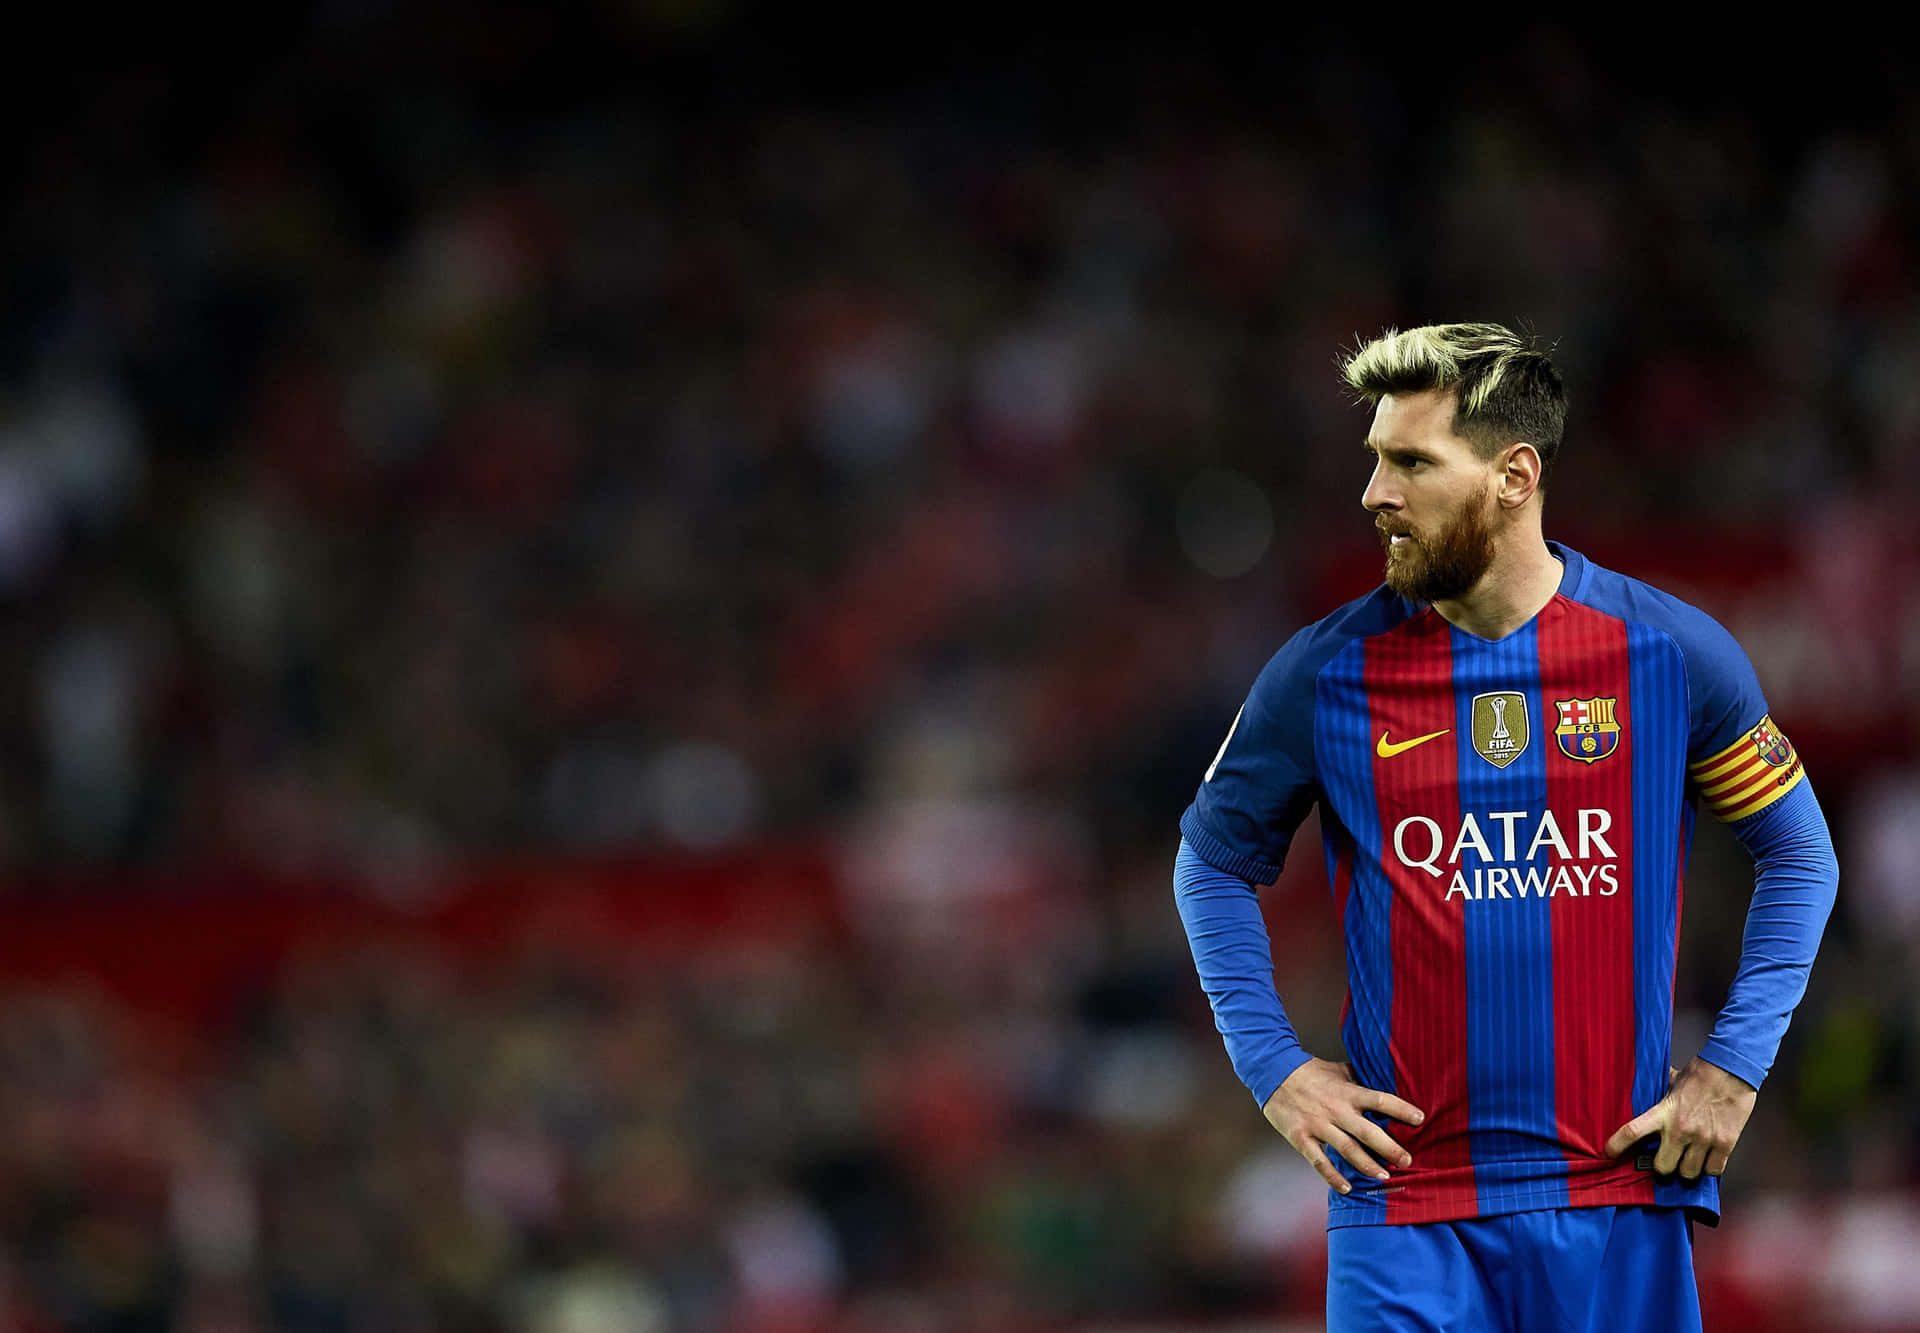 The beloved Argentine Lionel Messi